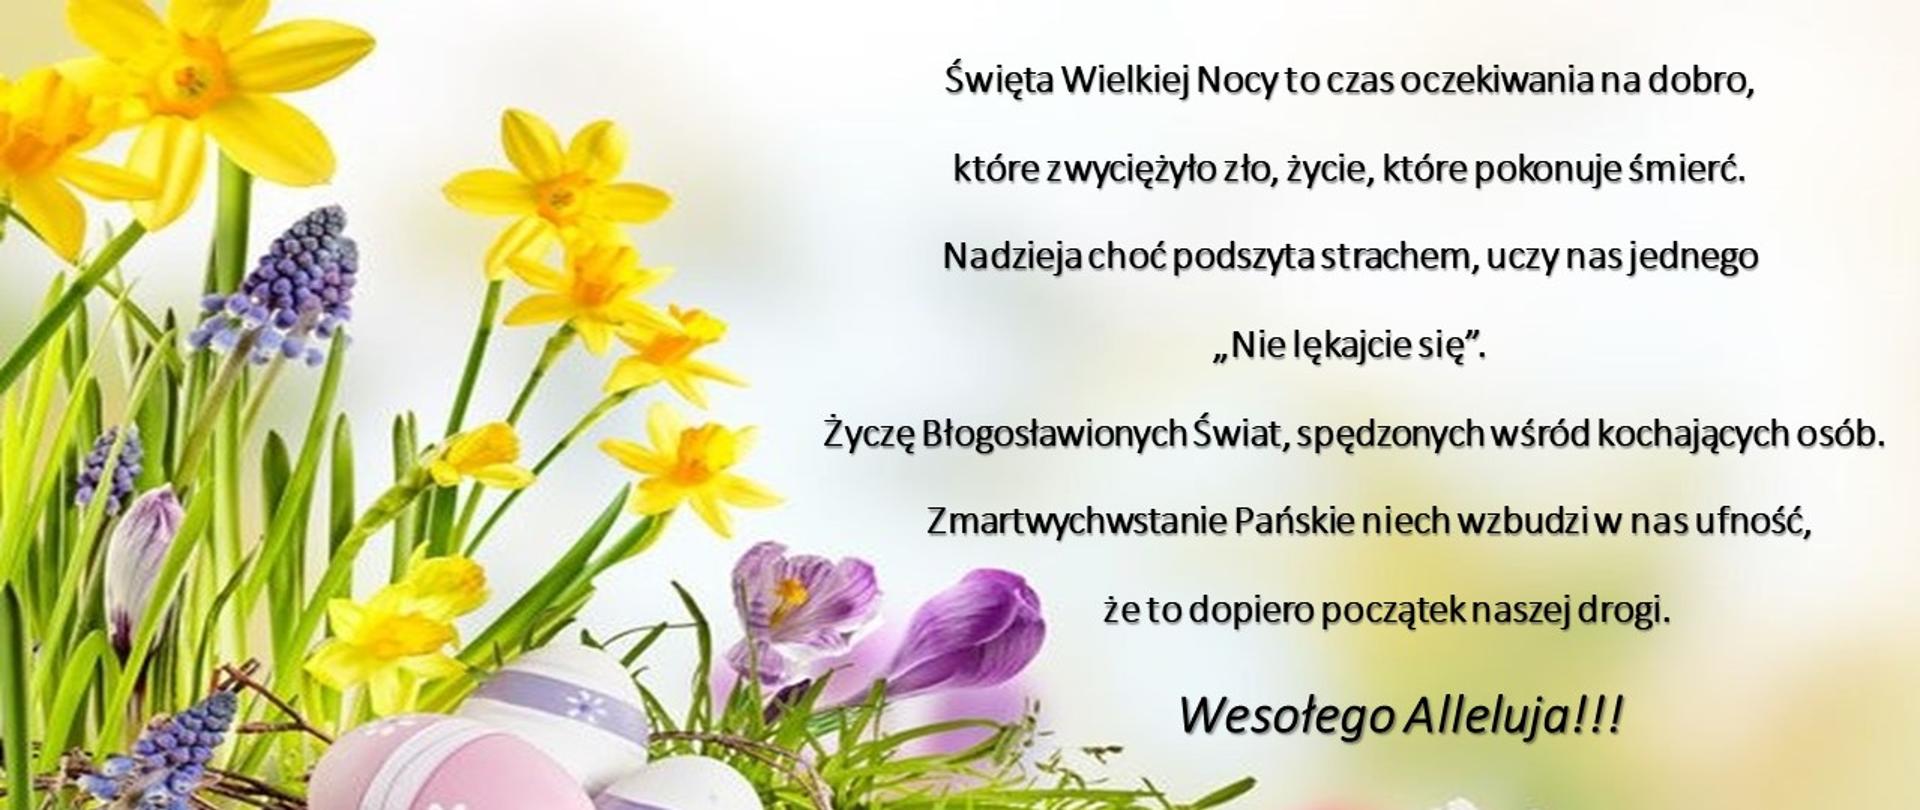 Życzenia wielkanocne Wójta Gminy Brańsk, w tle kolorowe wiosenne kwiaty, pisanki i trawa